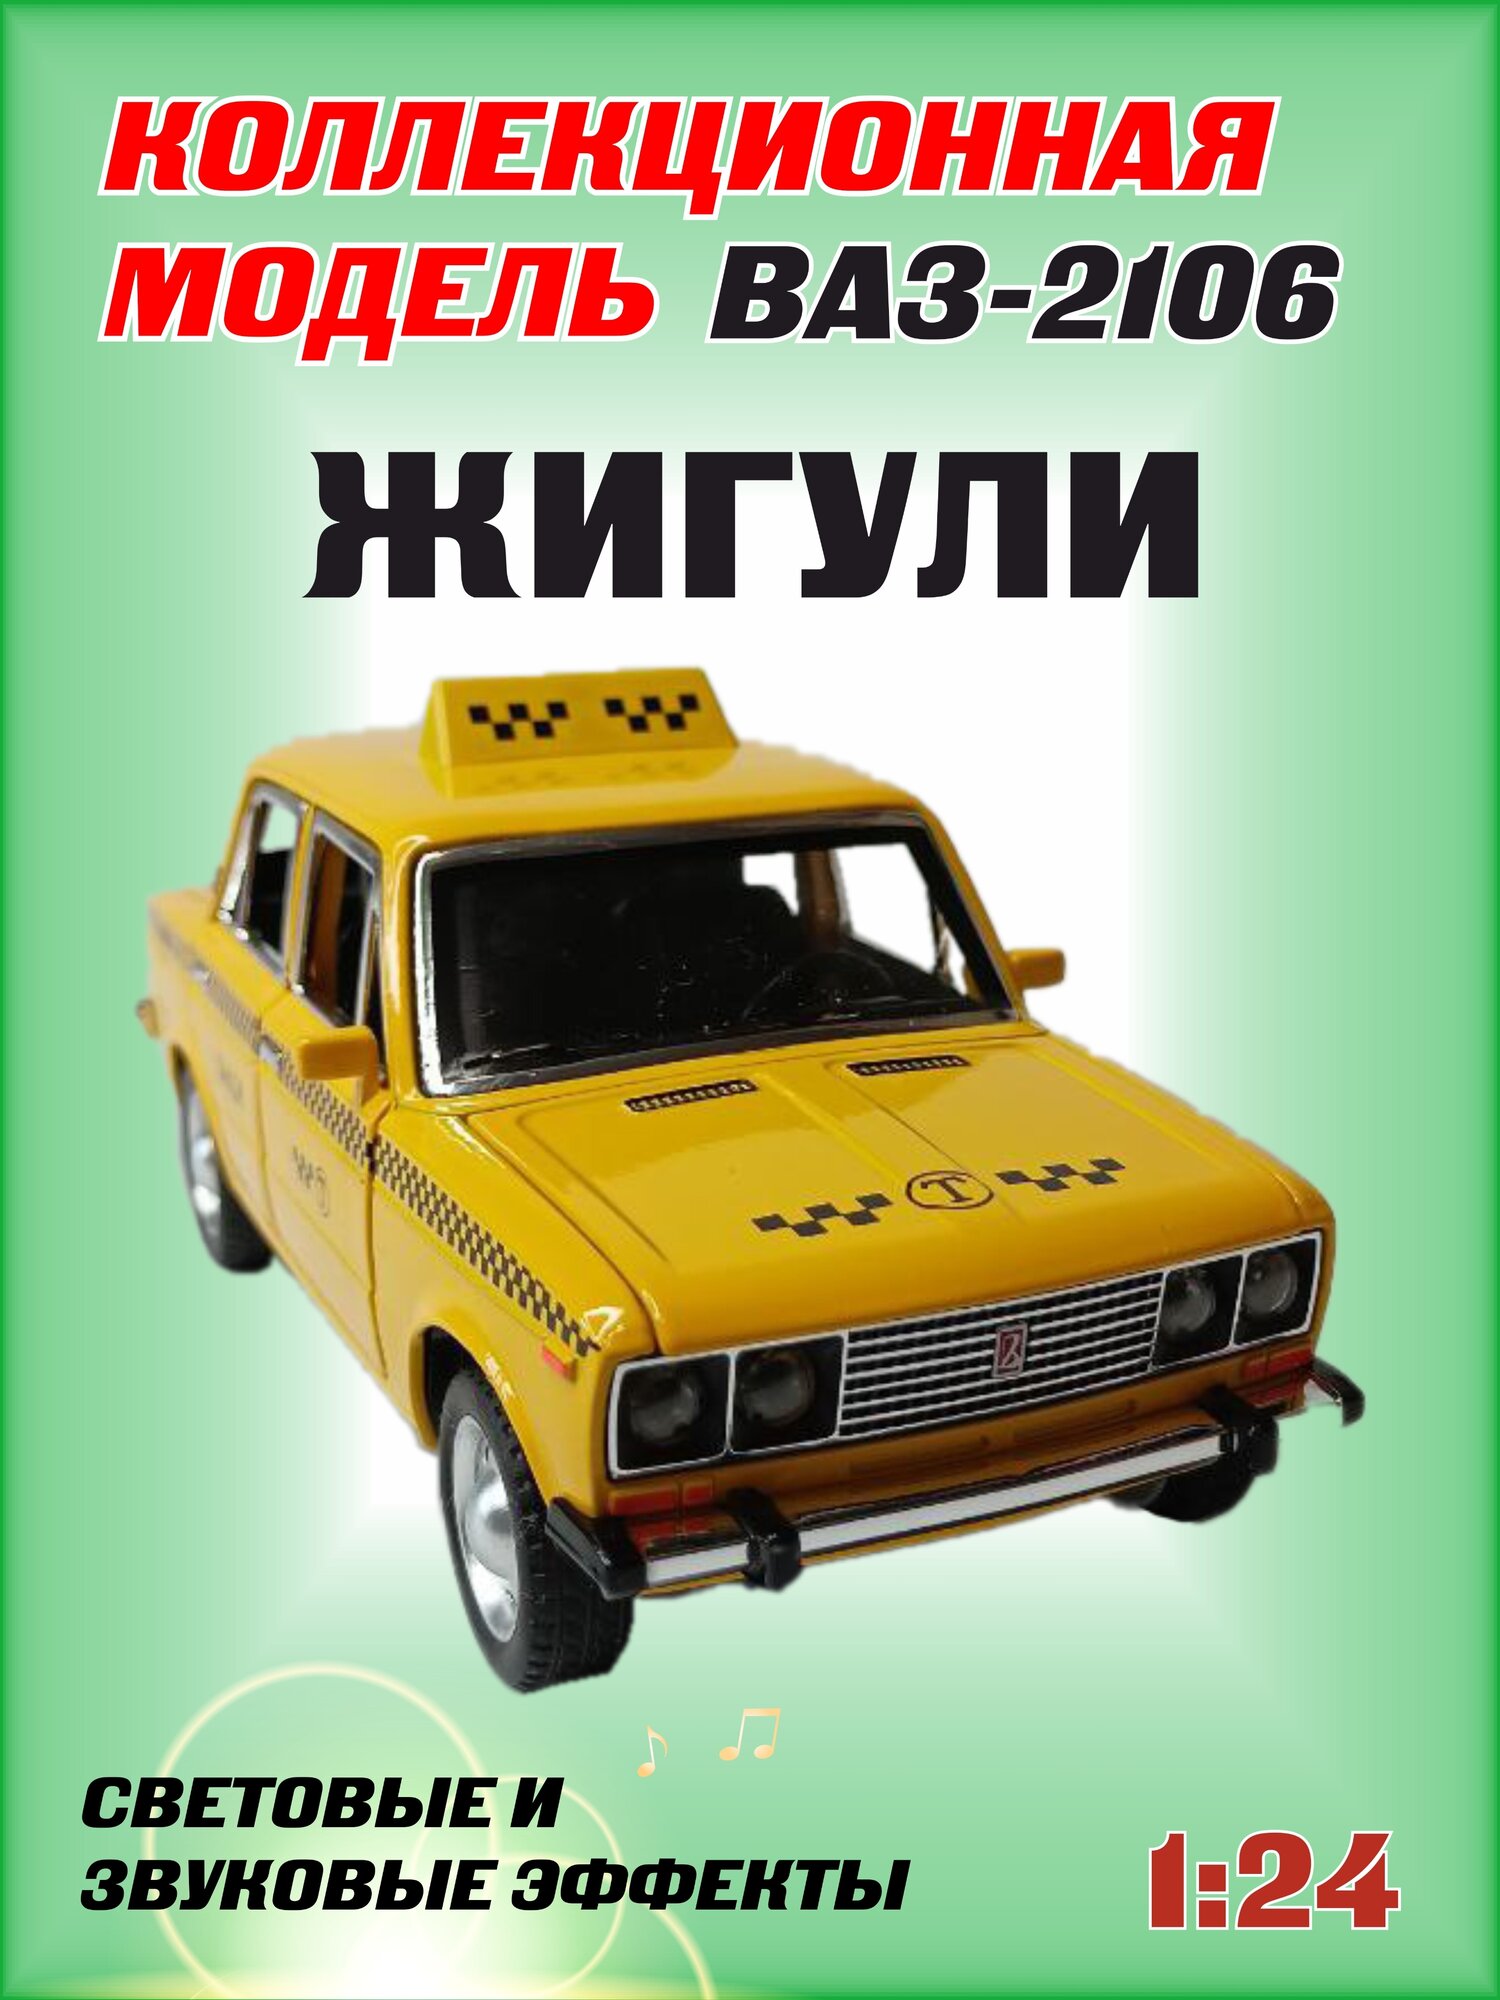 Коллекционная машинка игрушка металлическая Жигули ВАЗ 2106 для мальчиков масштабная модель 1:24 желтая